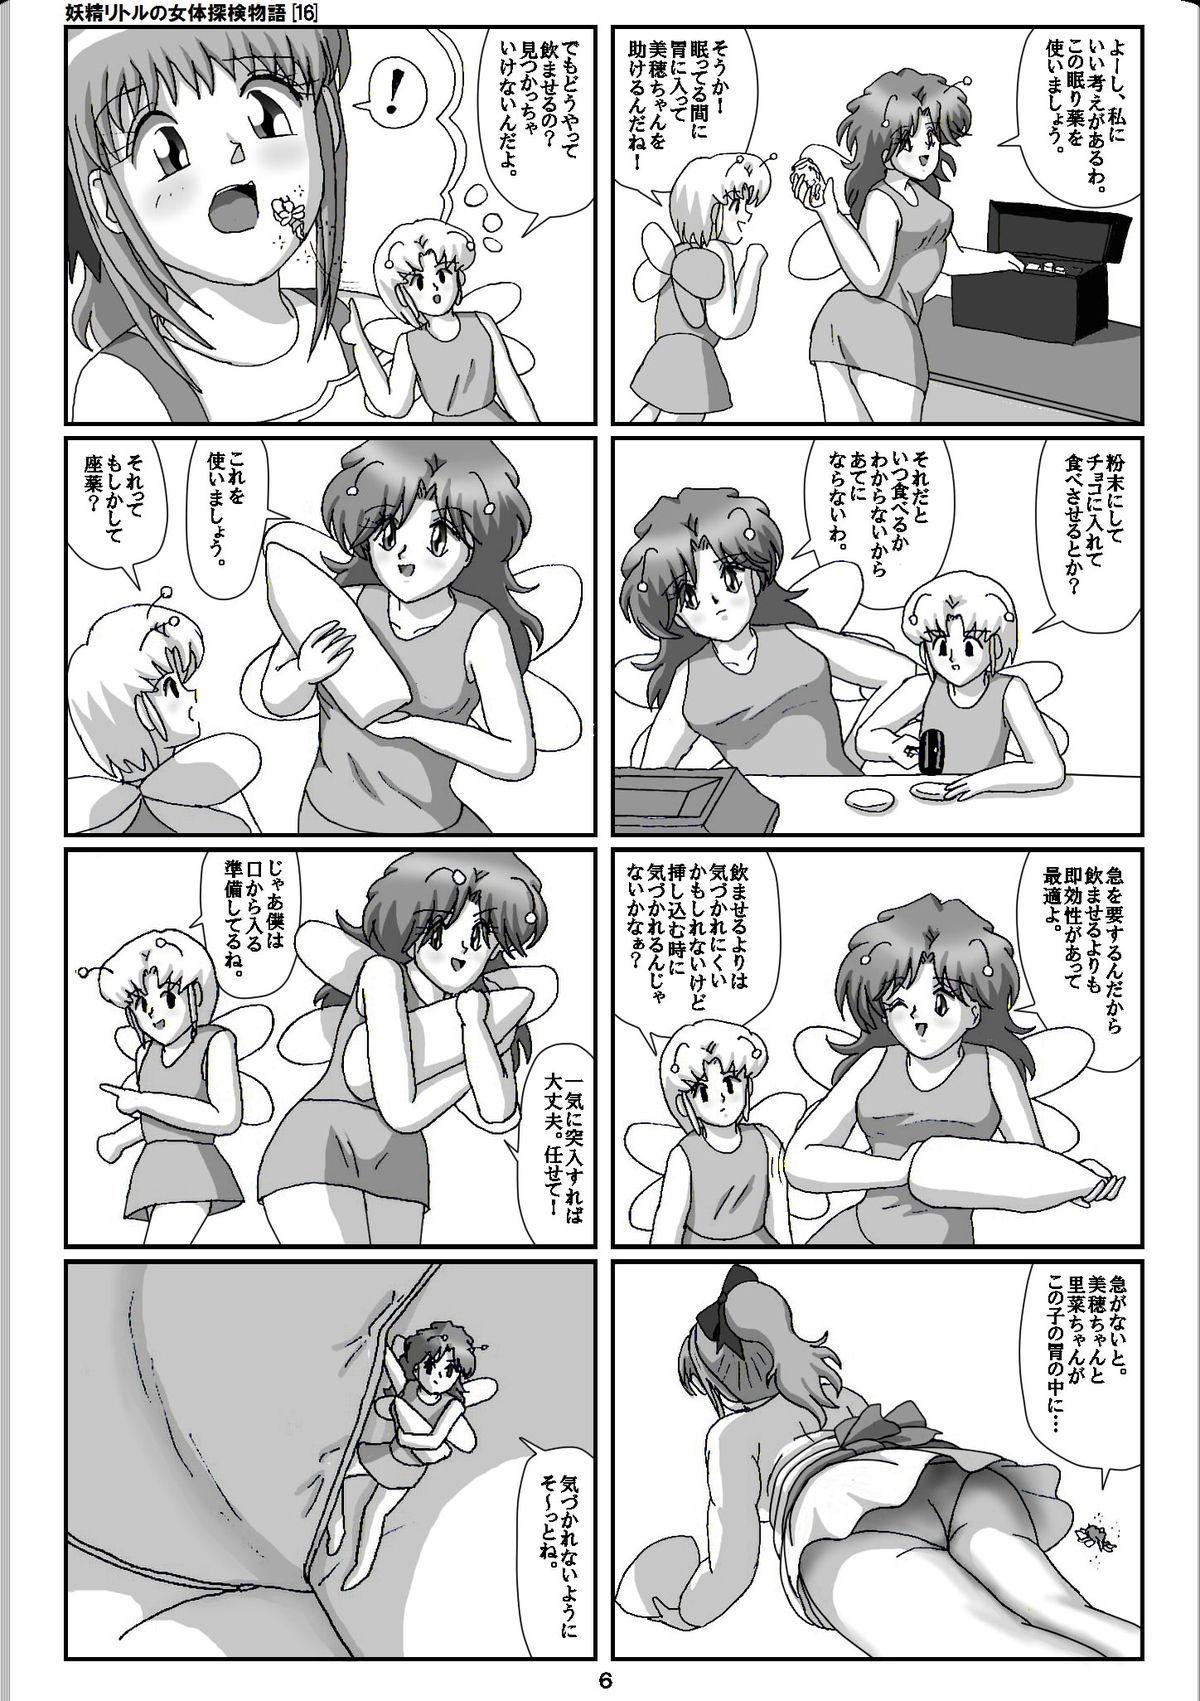 Vagina Yousei Little no Nyotai Tanken Monogatari Gets - Page 6